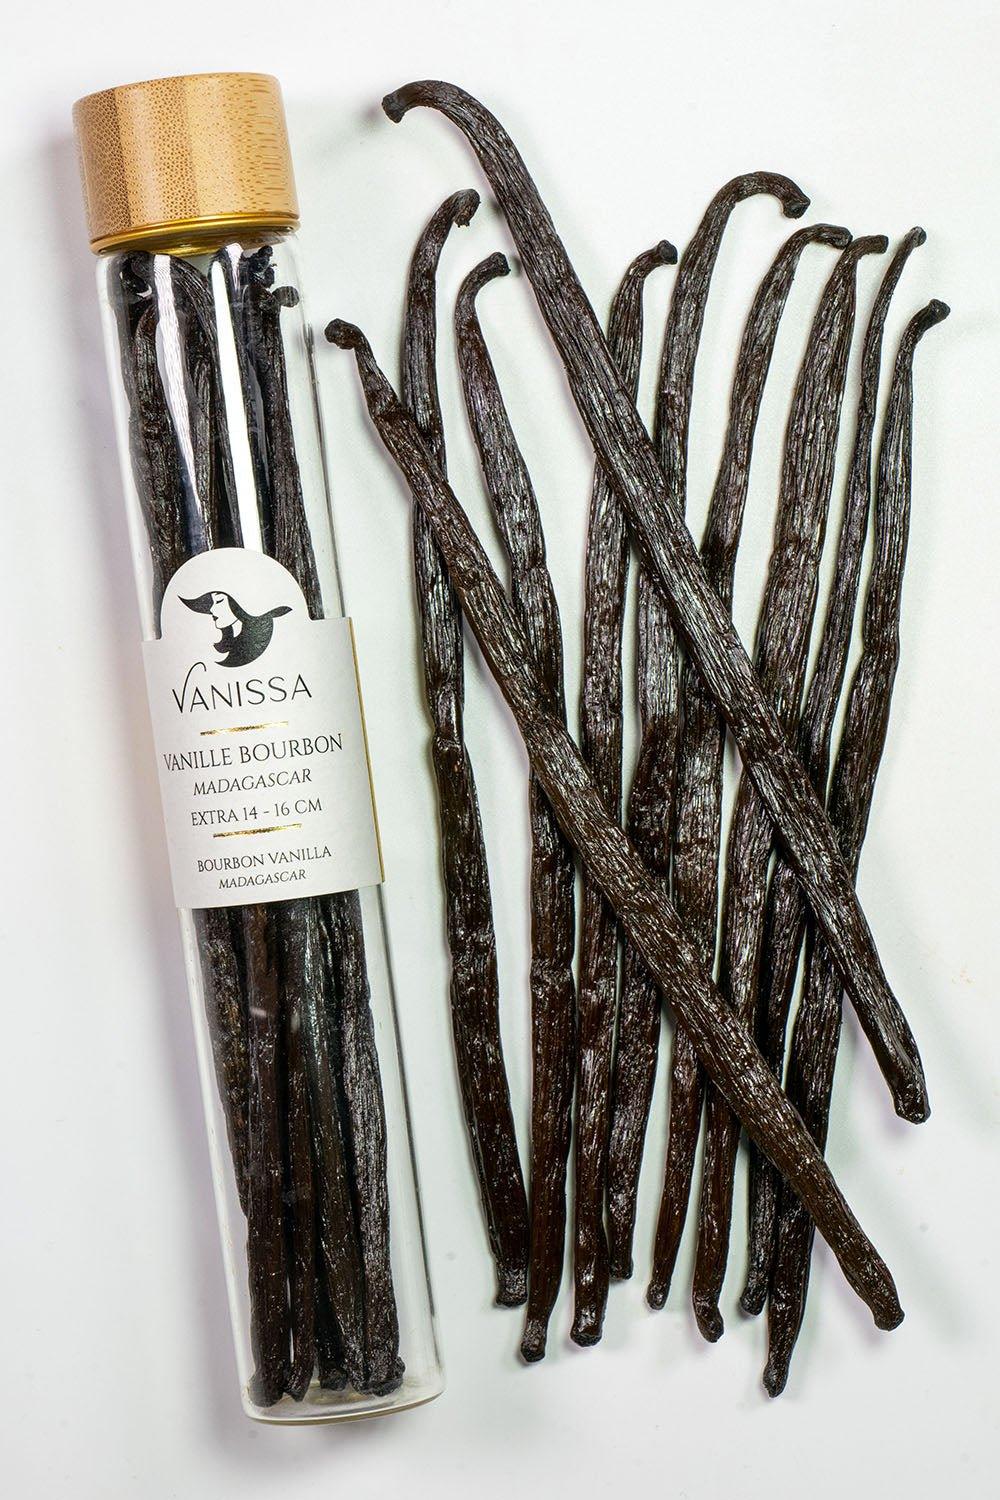 Gousses de Vanille Bourbon Gourmet Bio - Madagascar - Vanissa